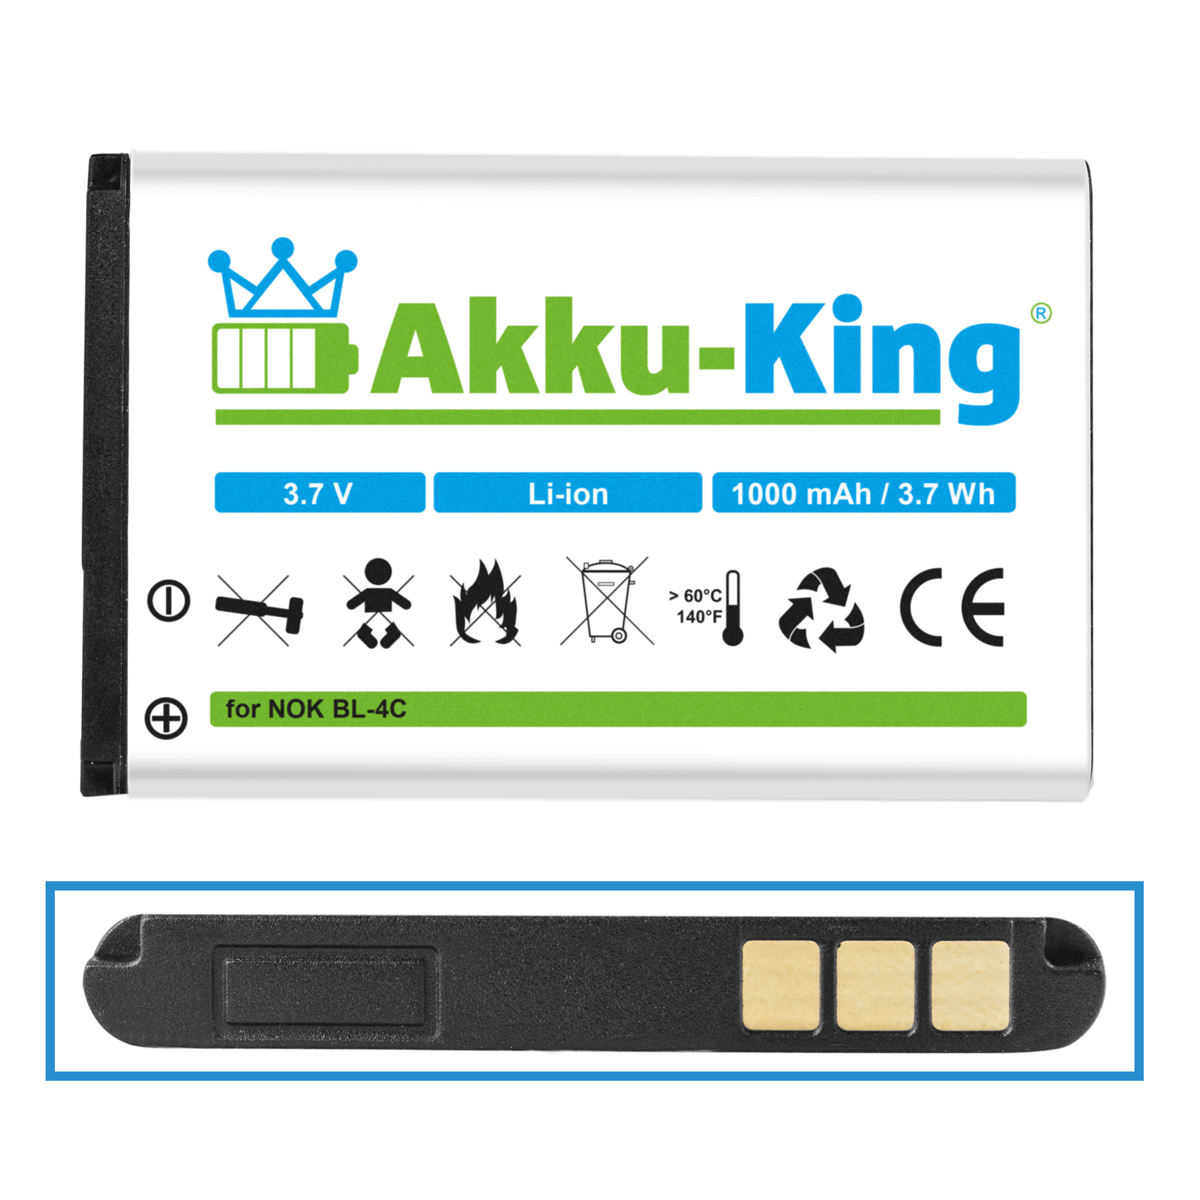 AKKU-KING Akku kompatibel mit 3.7 Li-Ion Doro Handy-Akku, 1000mAh Volt, XYP1110007704